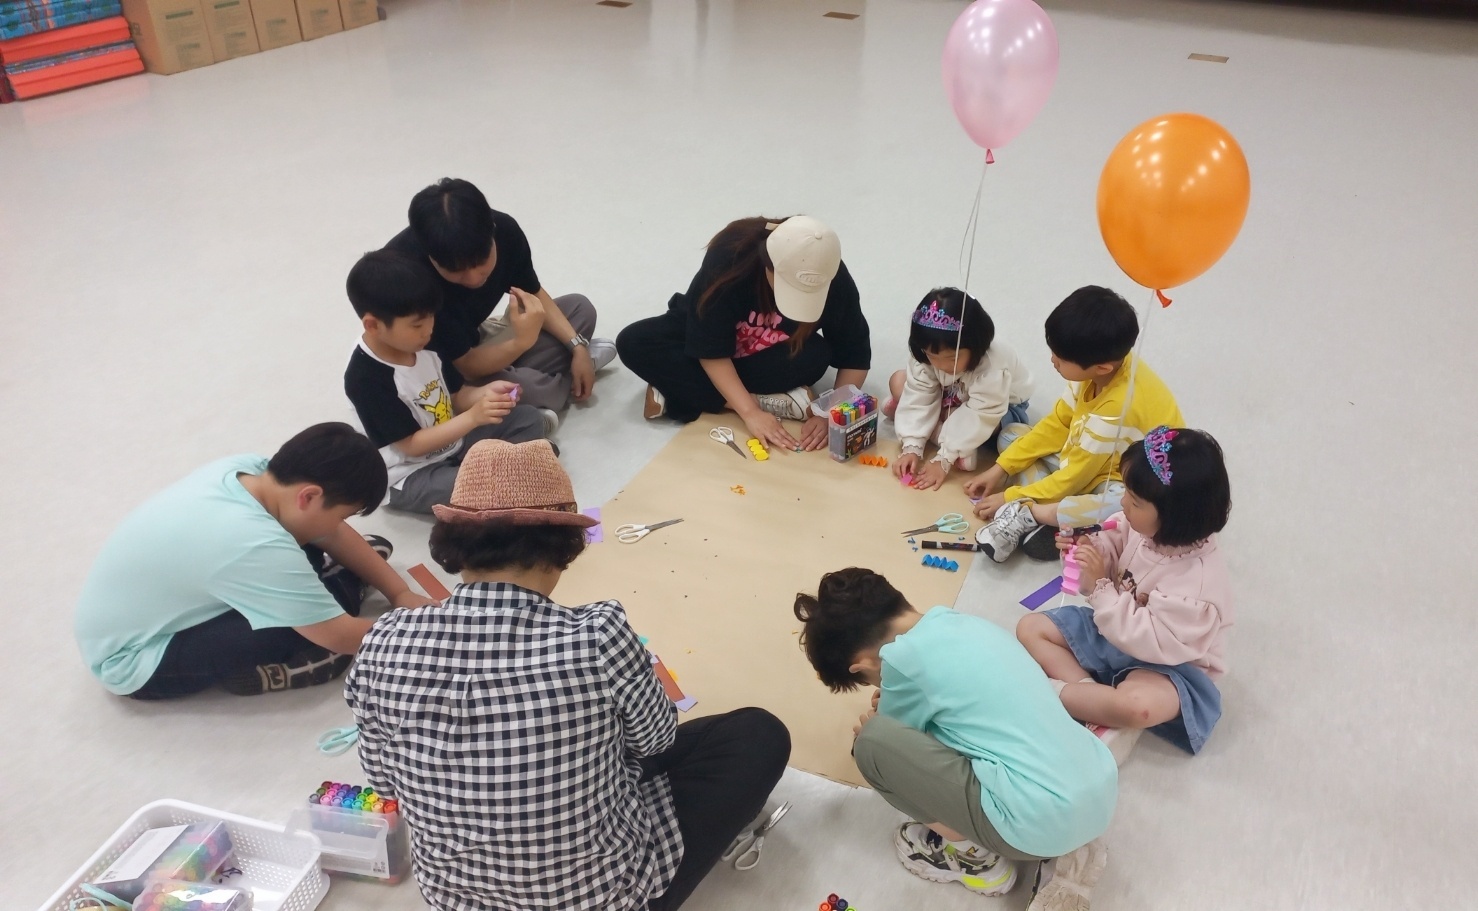 [어린이날 센터 체험 프로그램]'와우 놀이터, 함께놀다.' 어린이날 기획 프로그램 '생태놀이' 운영